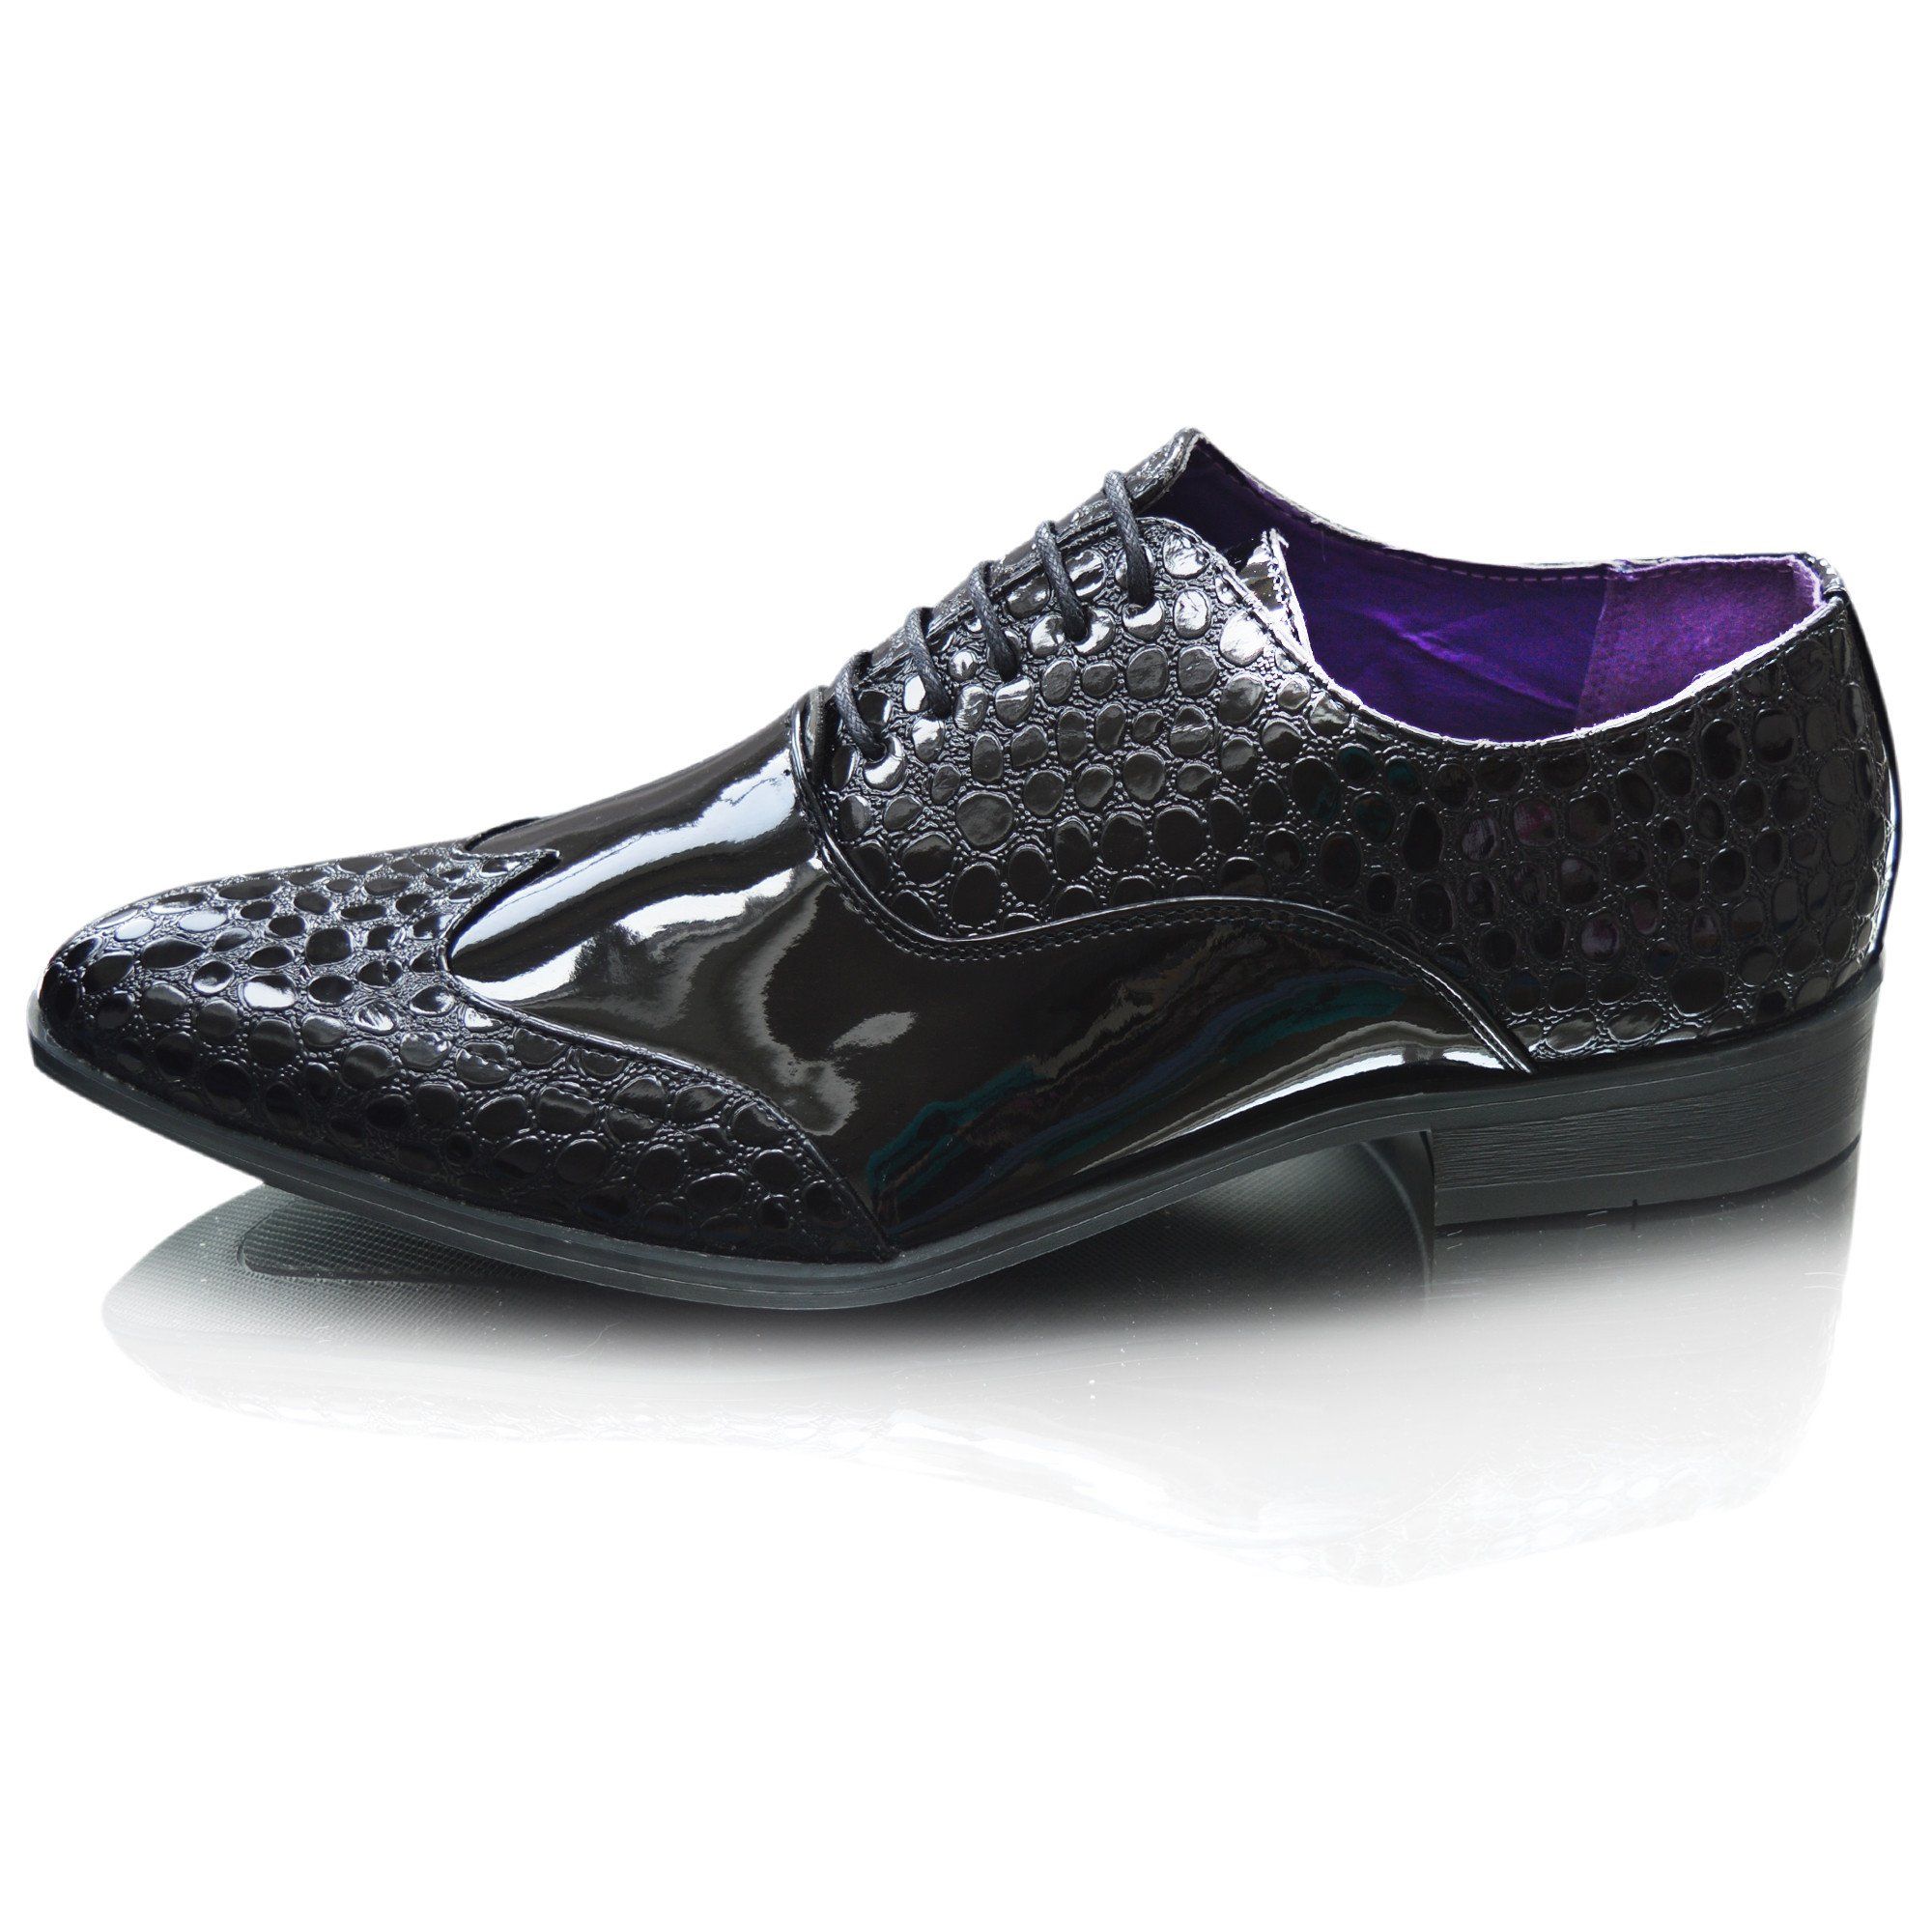 crocs dress shoes